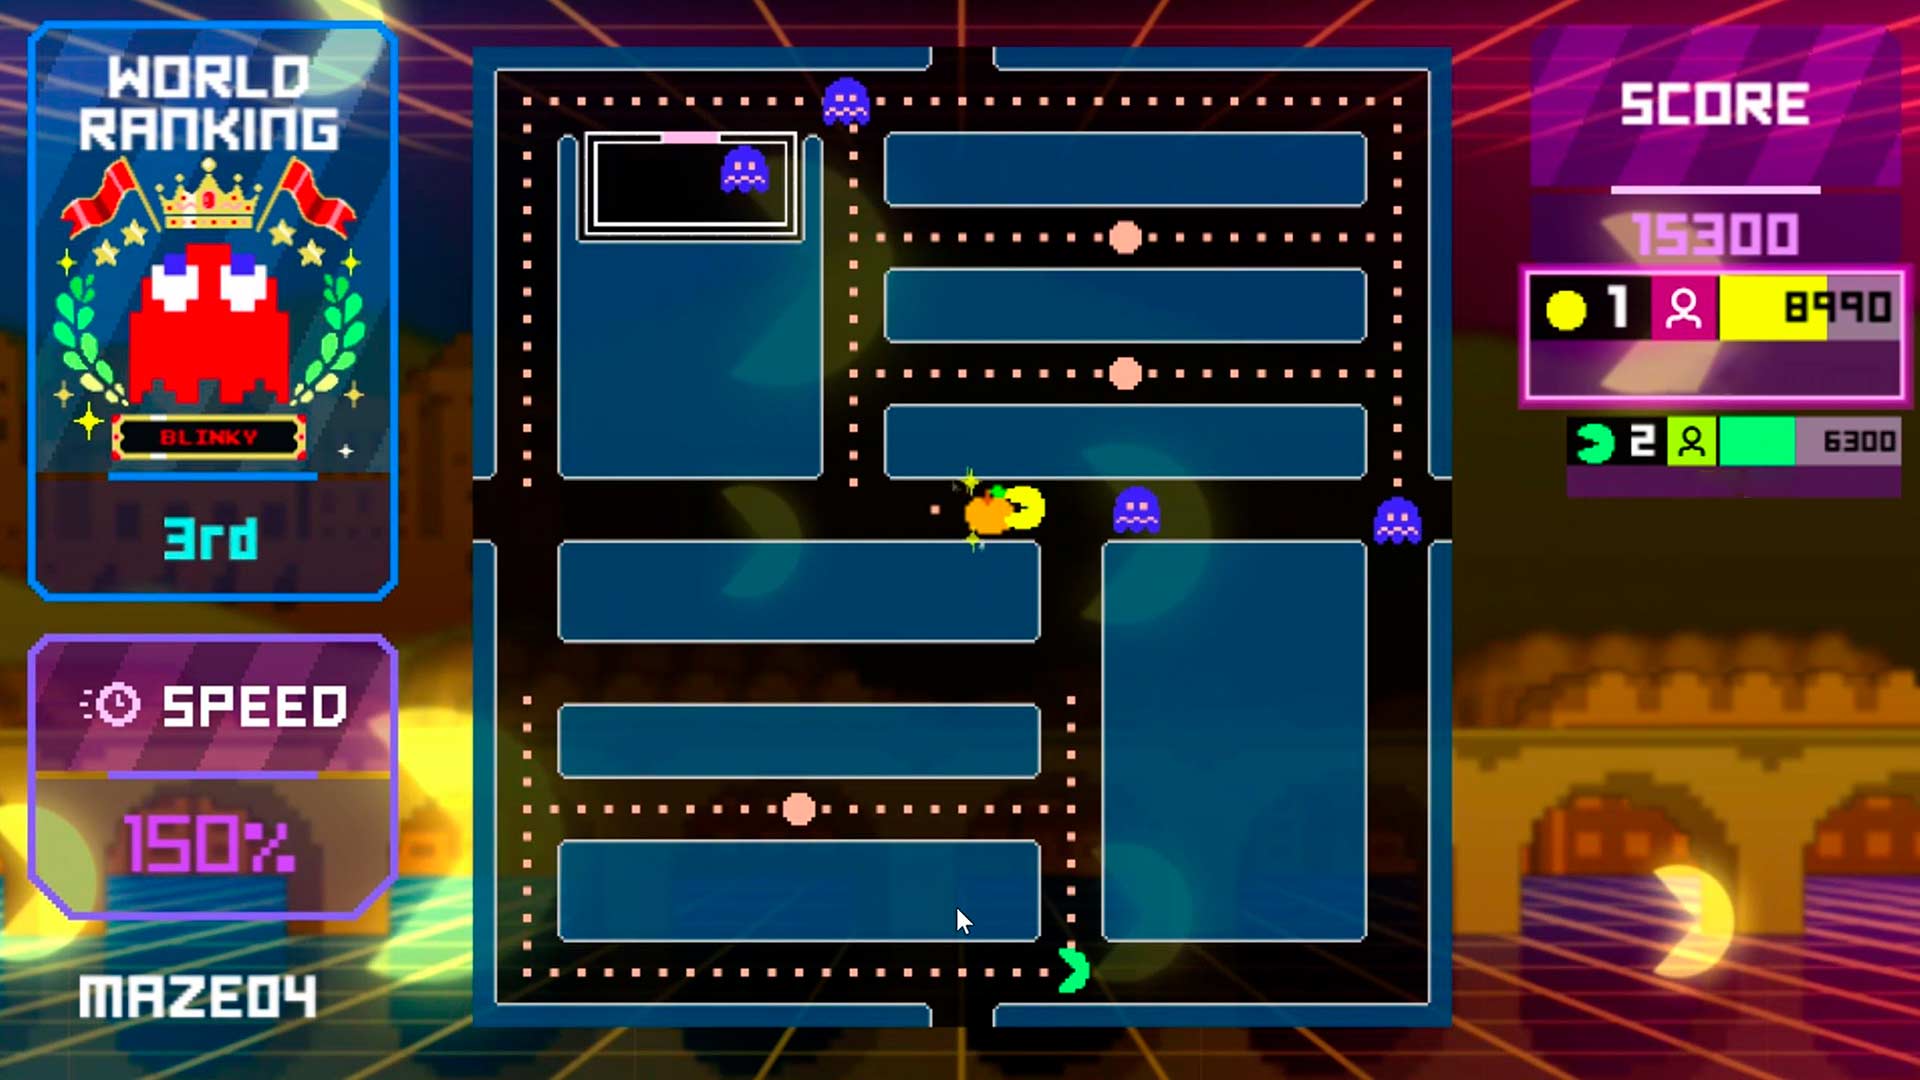 Lista reúne os melhores jogos de Pac-Man para consoles